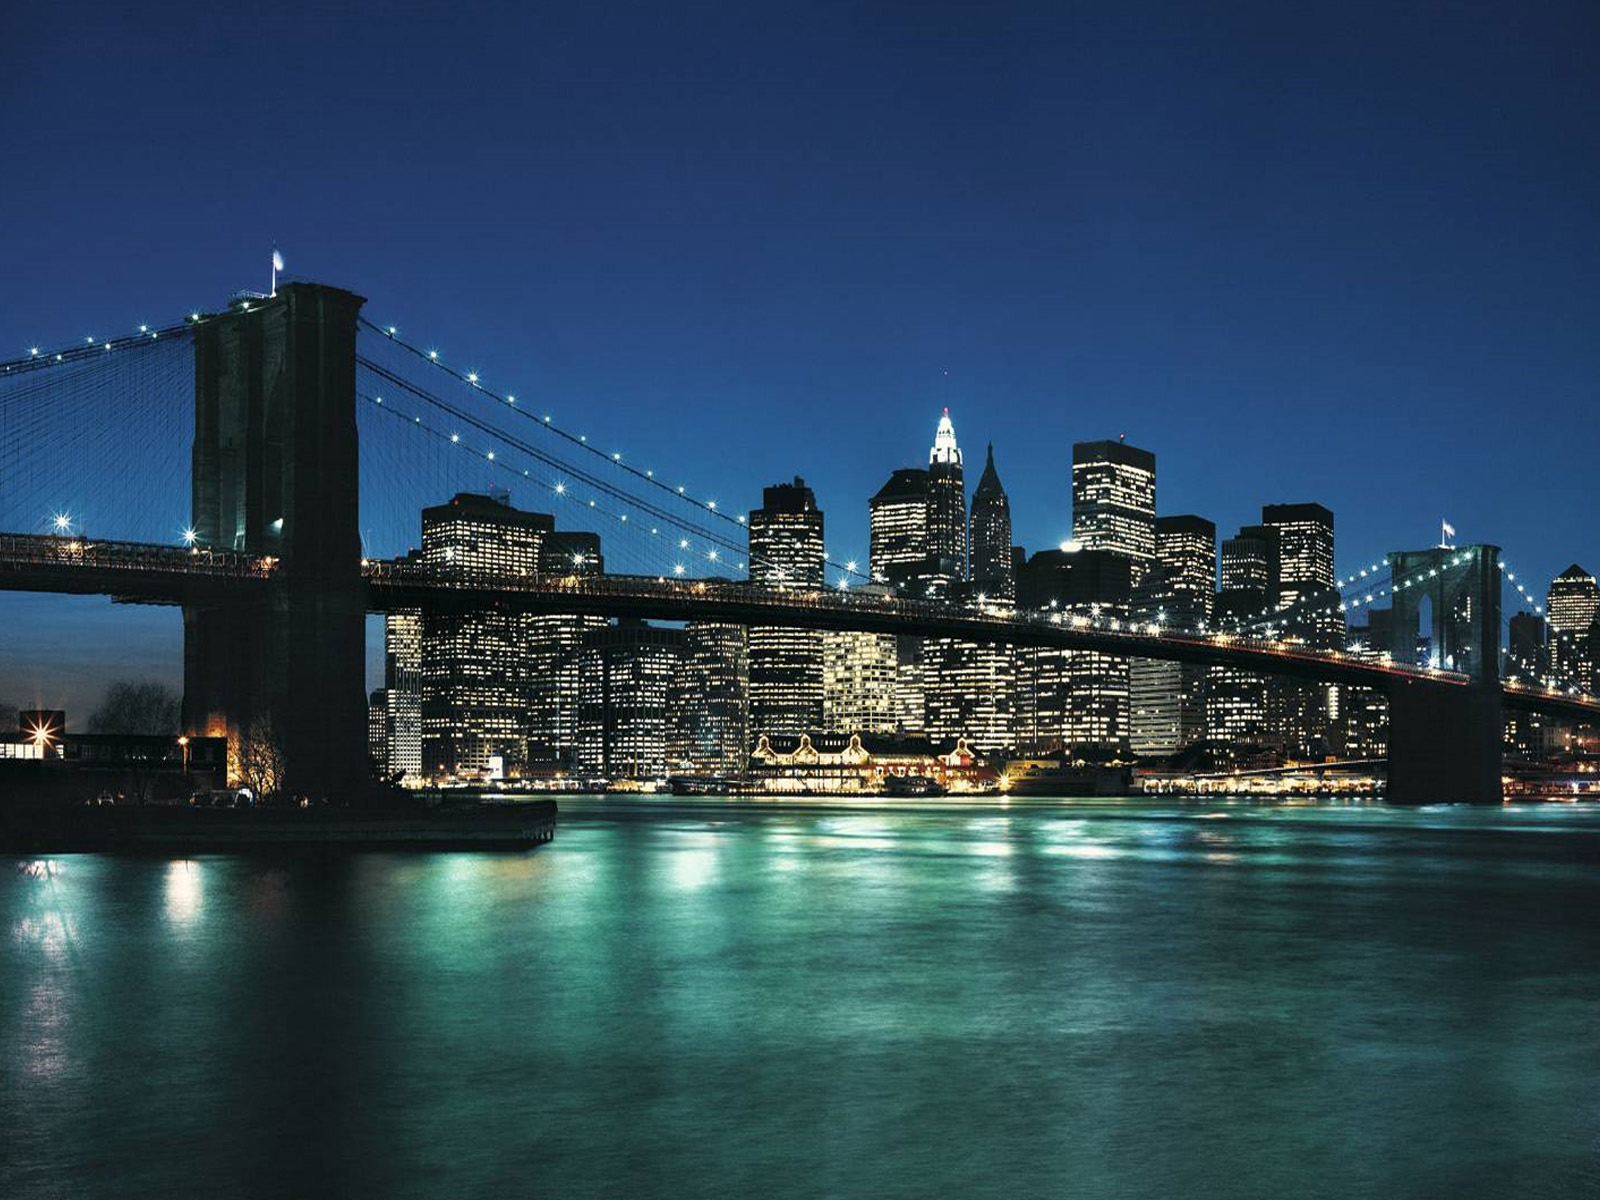 ブルックリン橋の壁紙,市,都市の景観,スカイライン,首都圏,夜